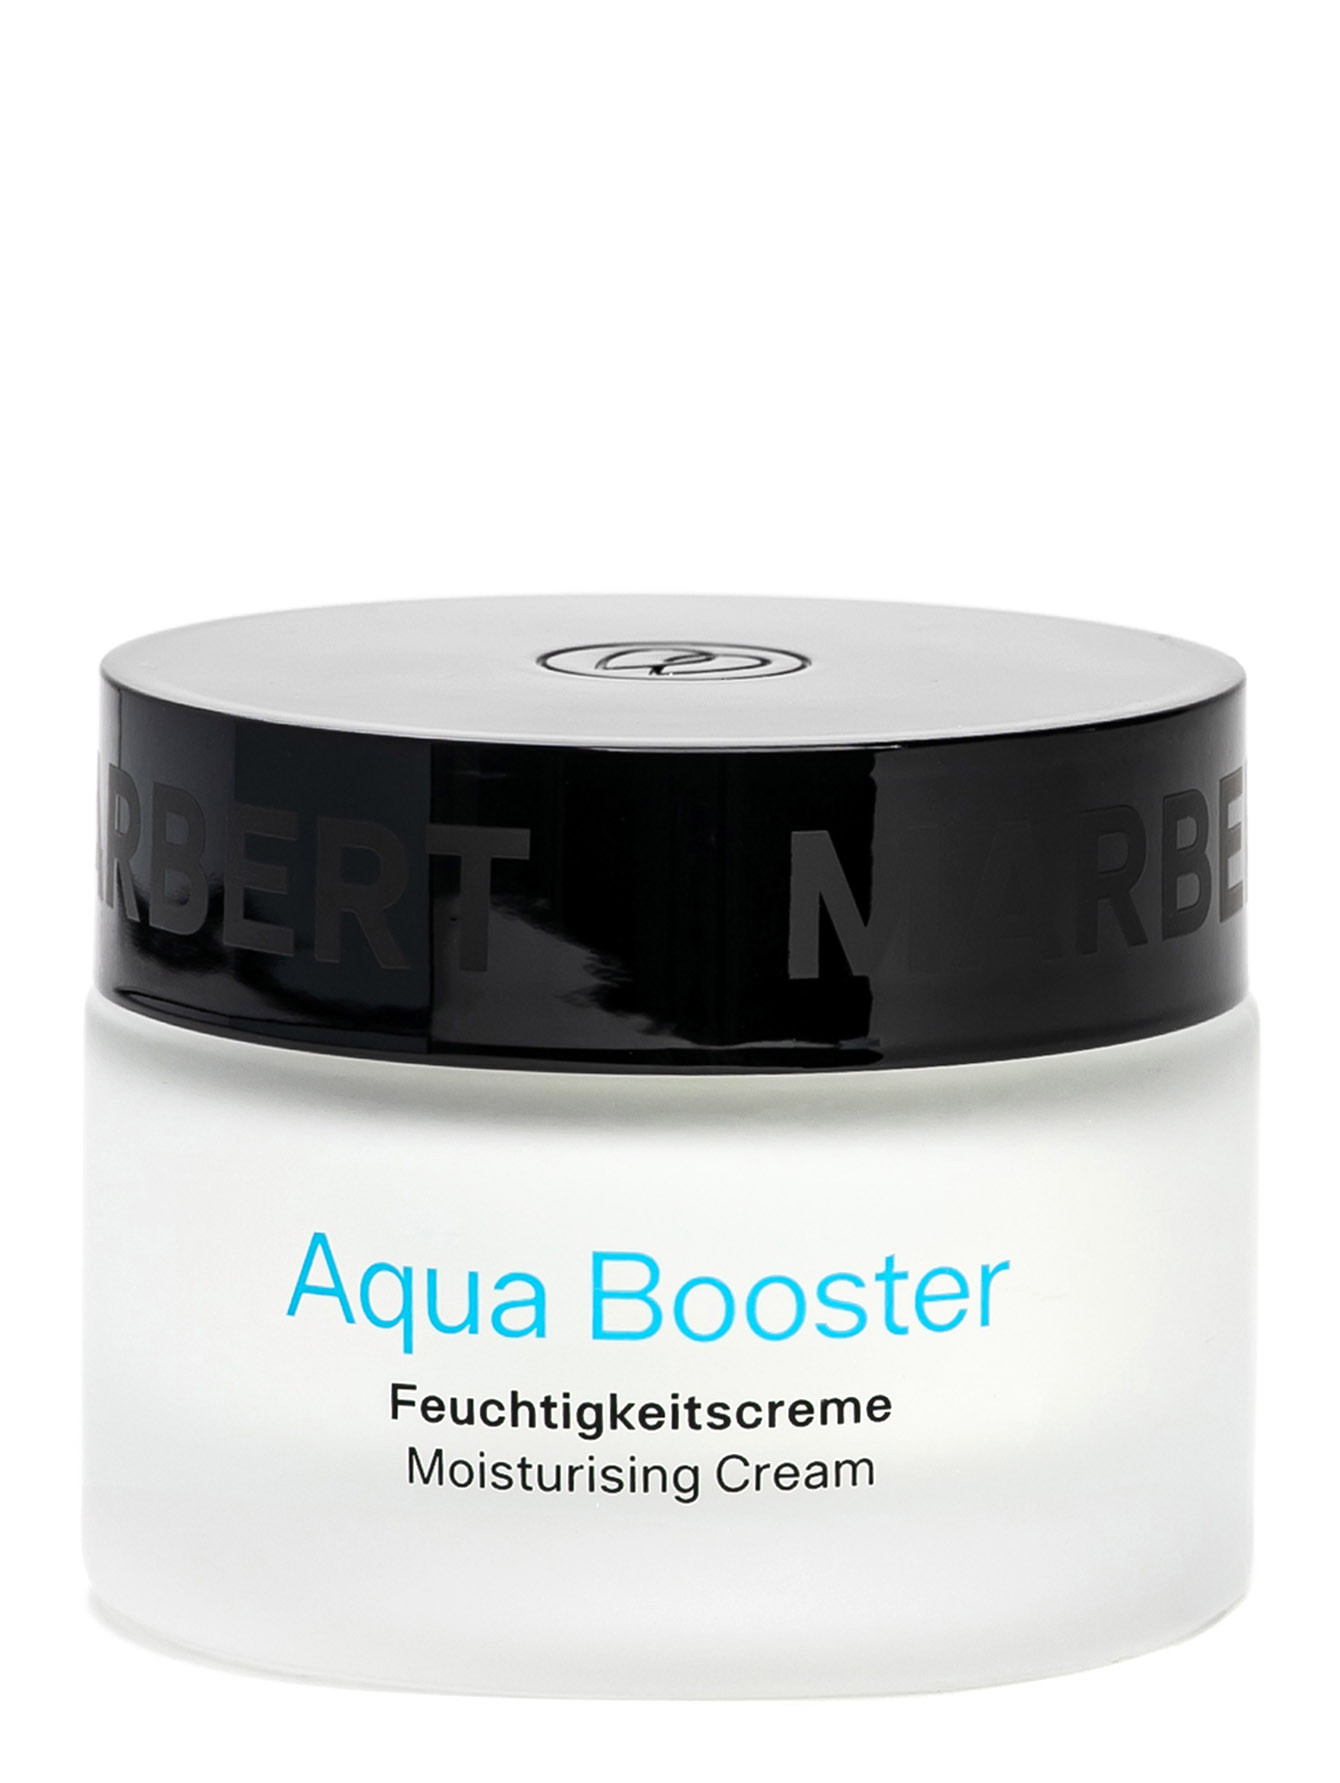 Увлажняющий крем для нормальной кожи лица Aqua Booster Moisturising Cream, 50 мл - Общий вид